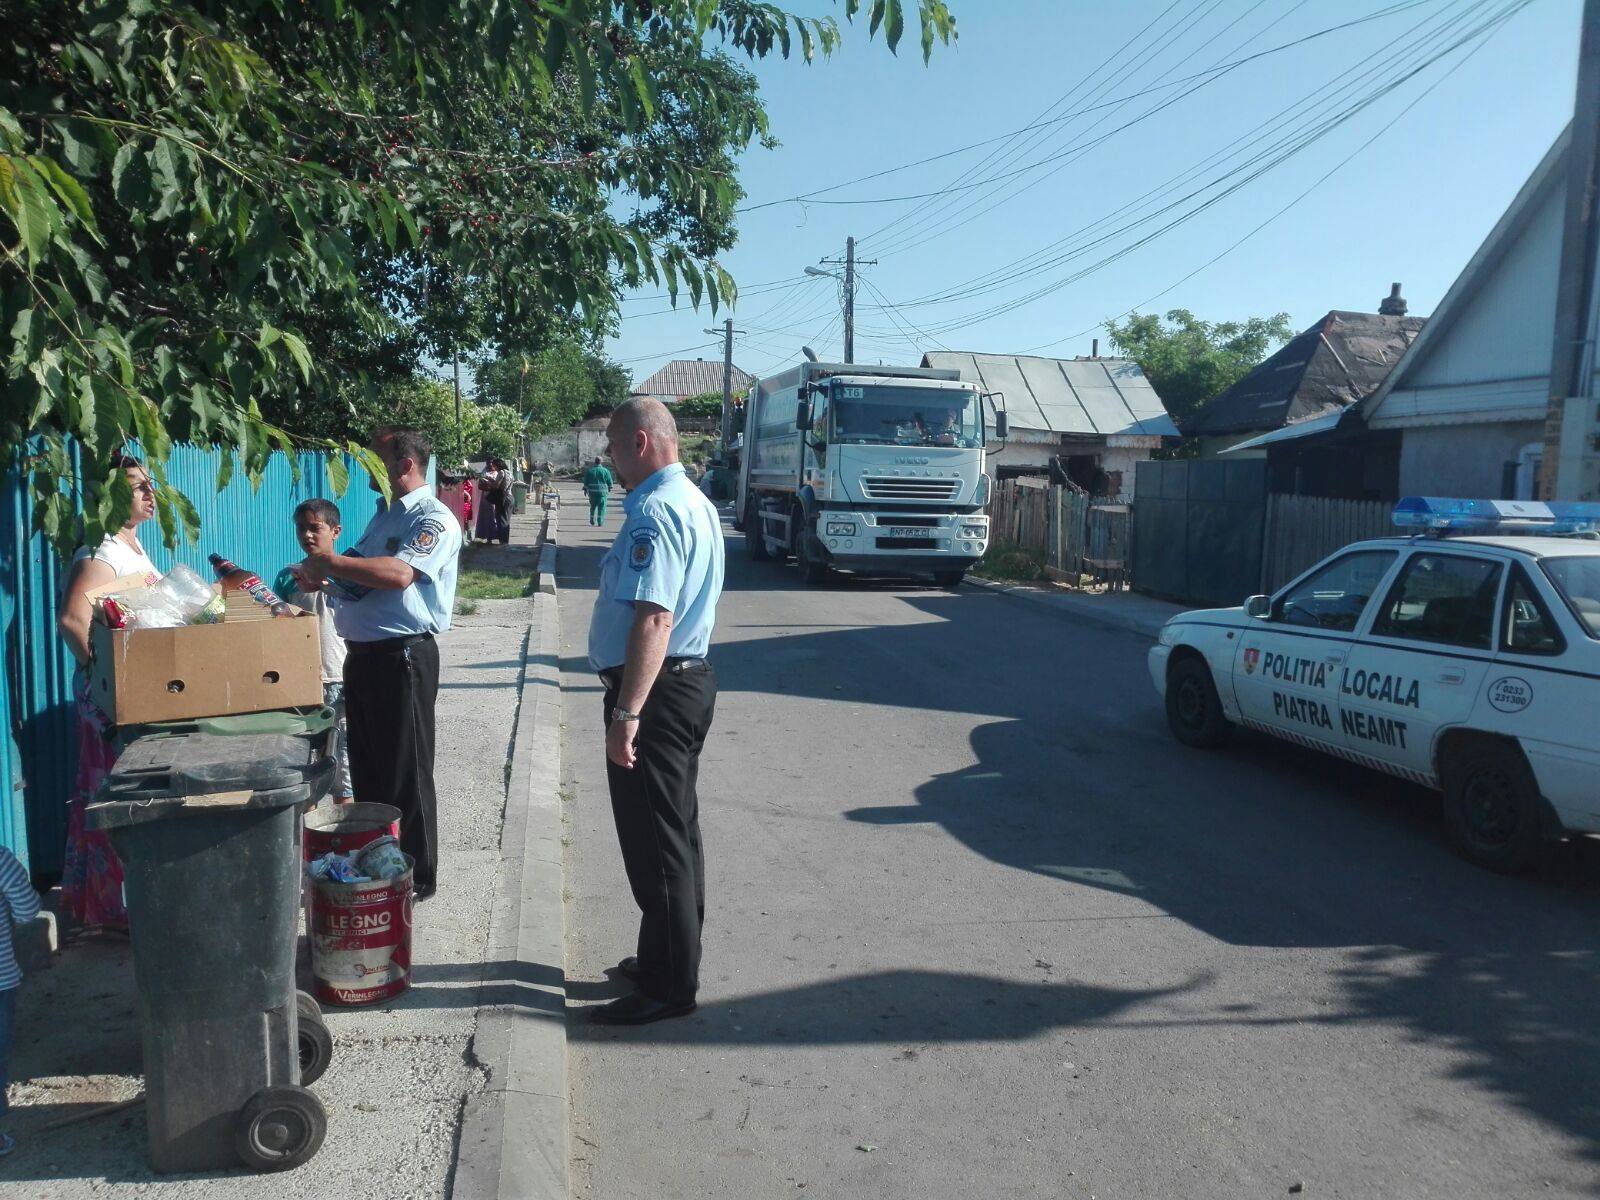 Mașinile de gunoi merg însoțite de poliție în unele zone din Piatra-Neamț ©